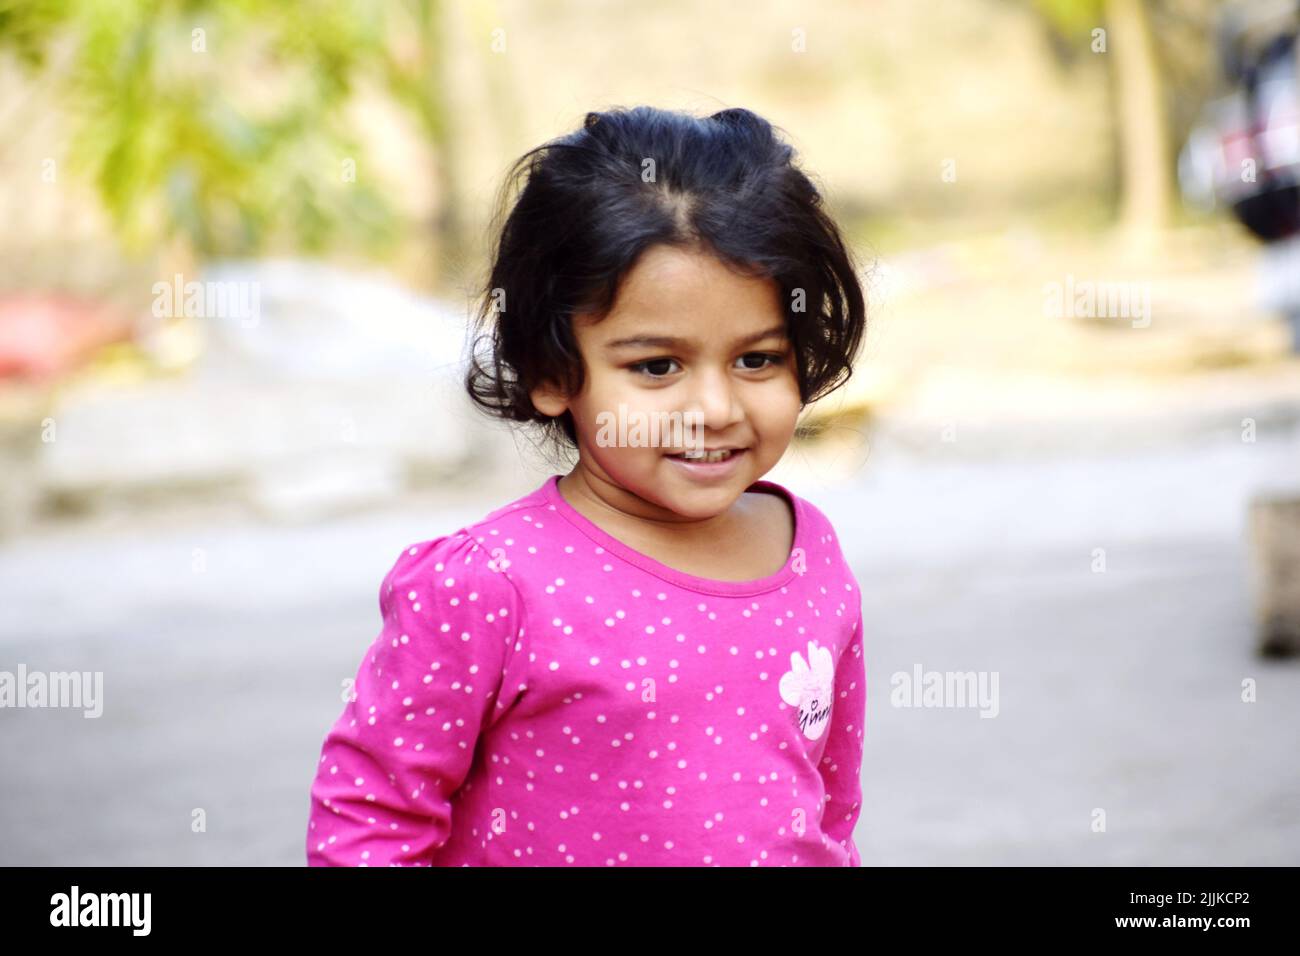 Ein indisches schwarzhaariges Mädchen, das lächelt und im Park spielt Stockfoto